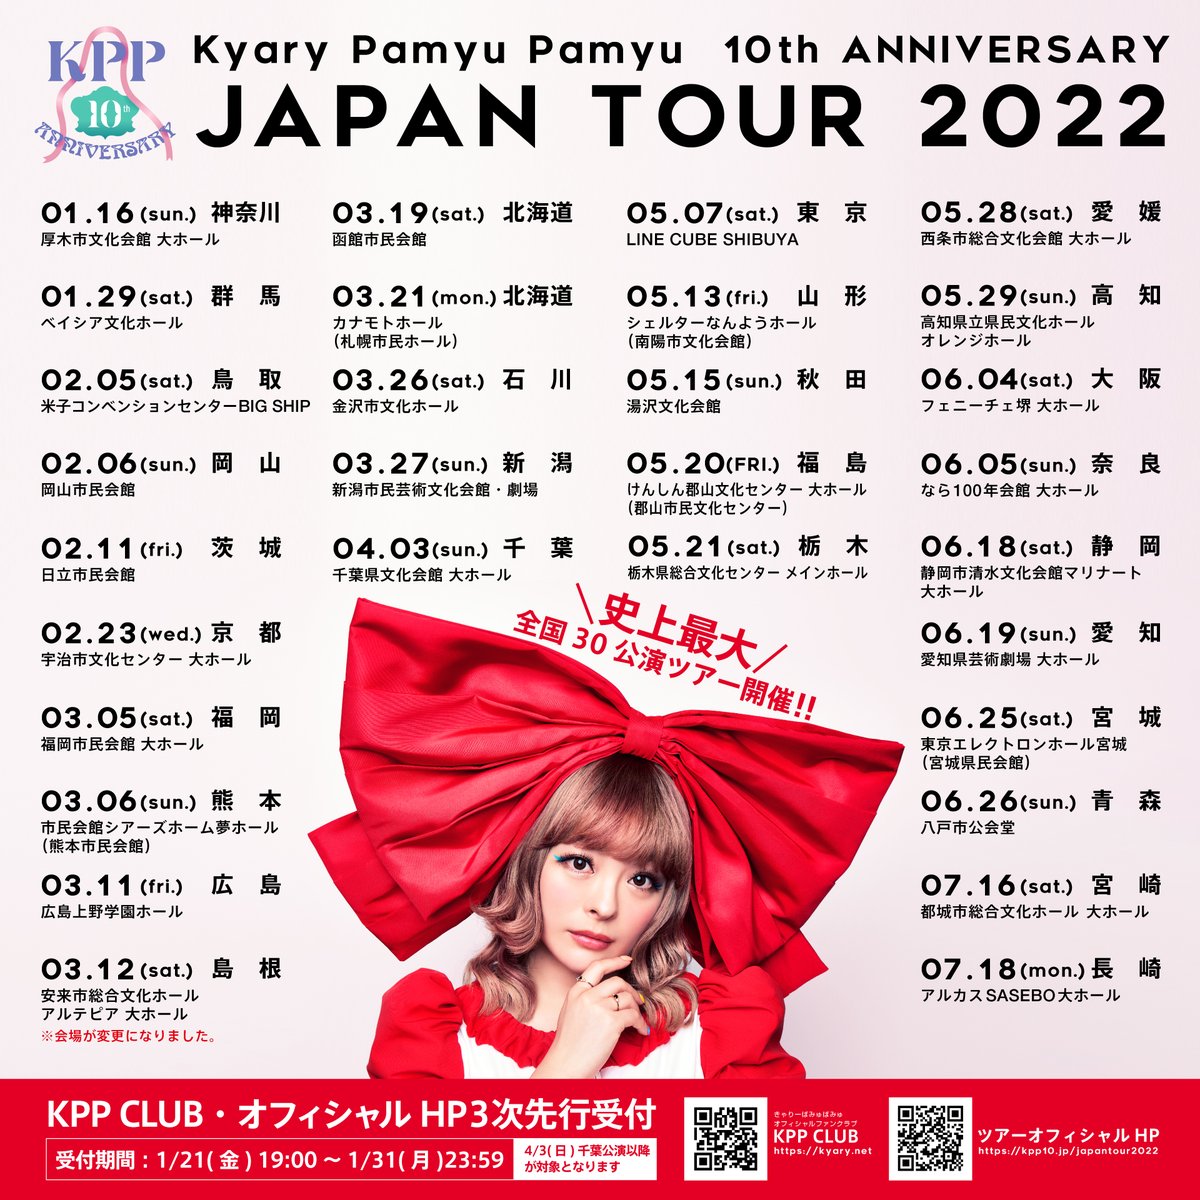 きゃりーぱみゅぱみゅ 10th ANNIVERSARY JAPAN TOUR 2022 CANDY WAVE（なら100年会館）